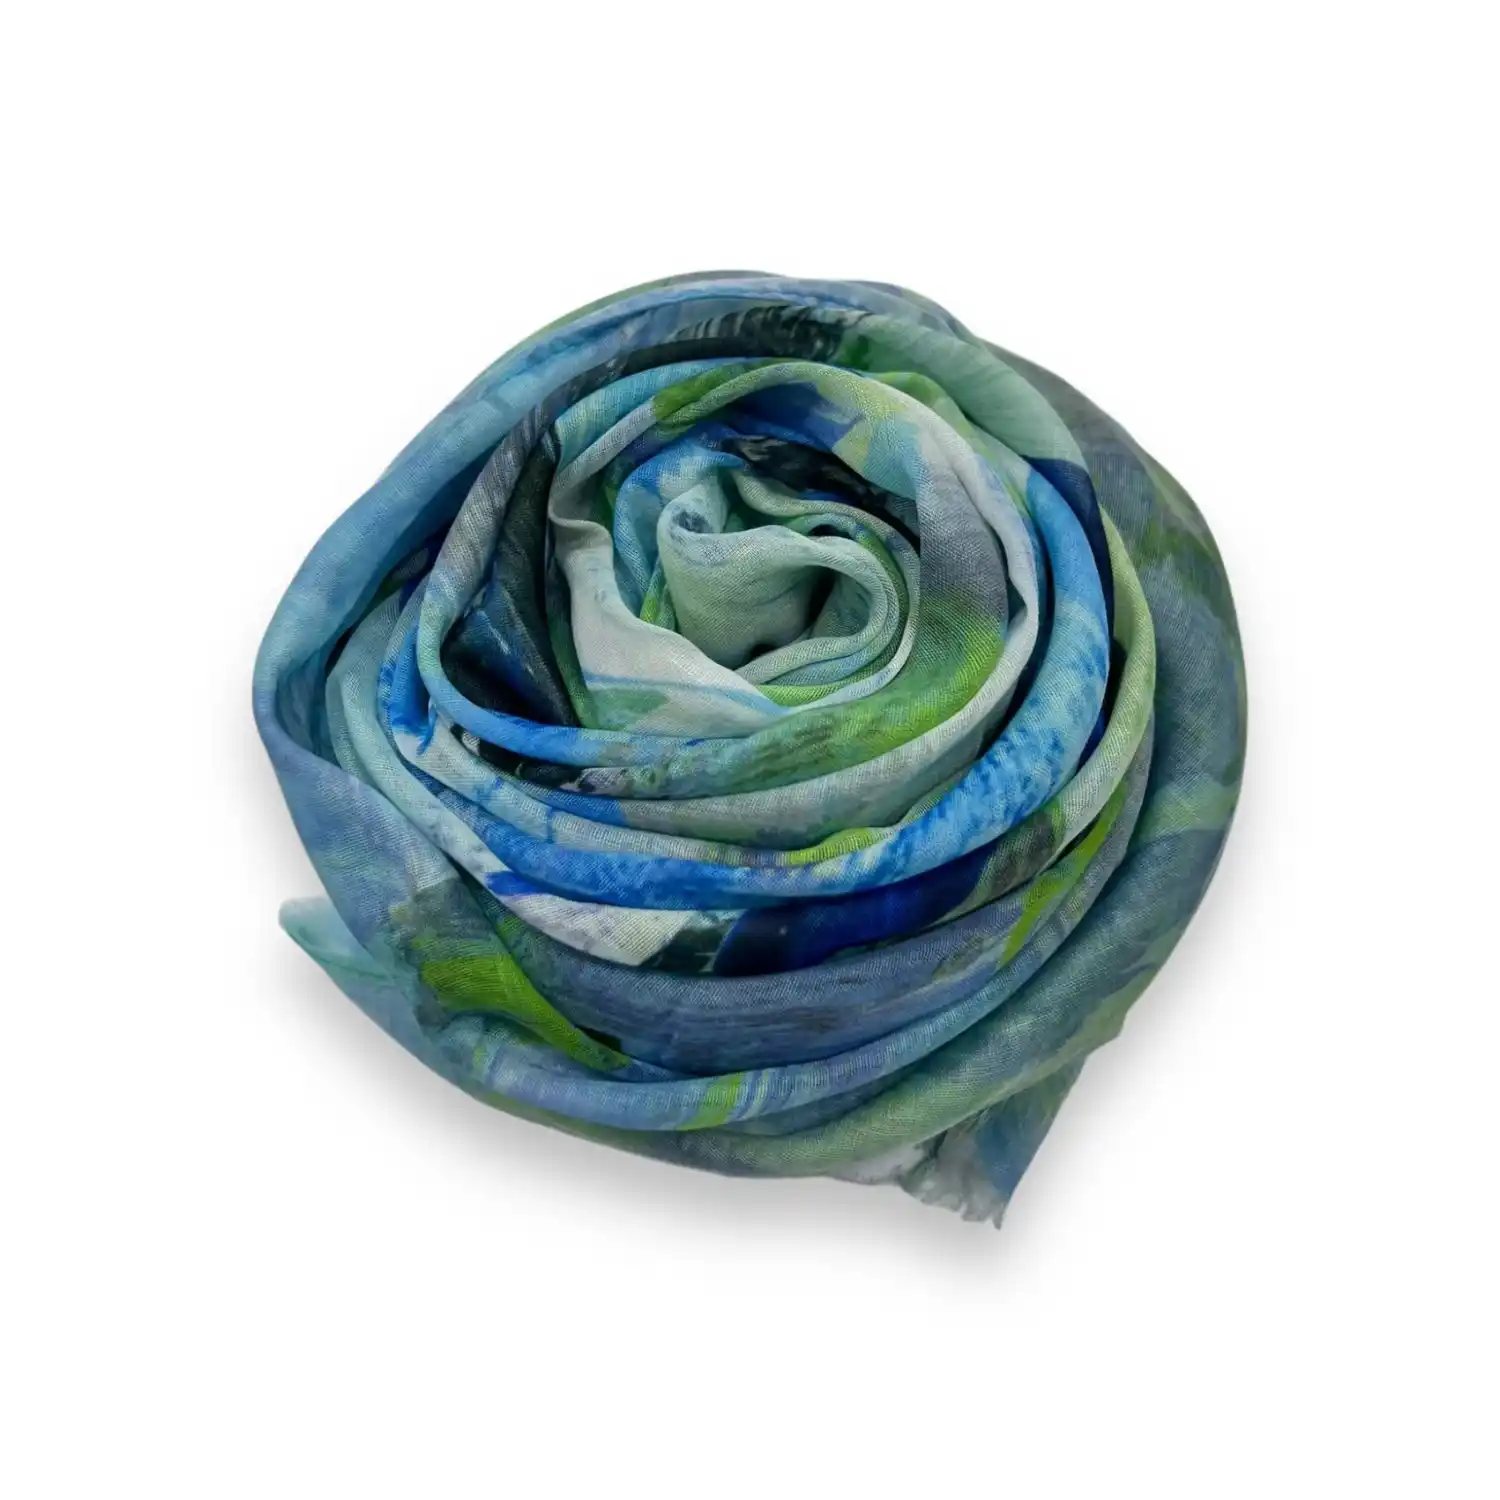 Tørklæde i blå og grønne nuancer med abstrakt mønster